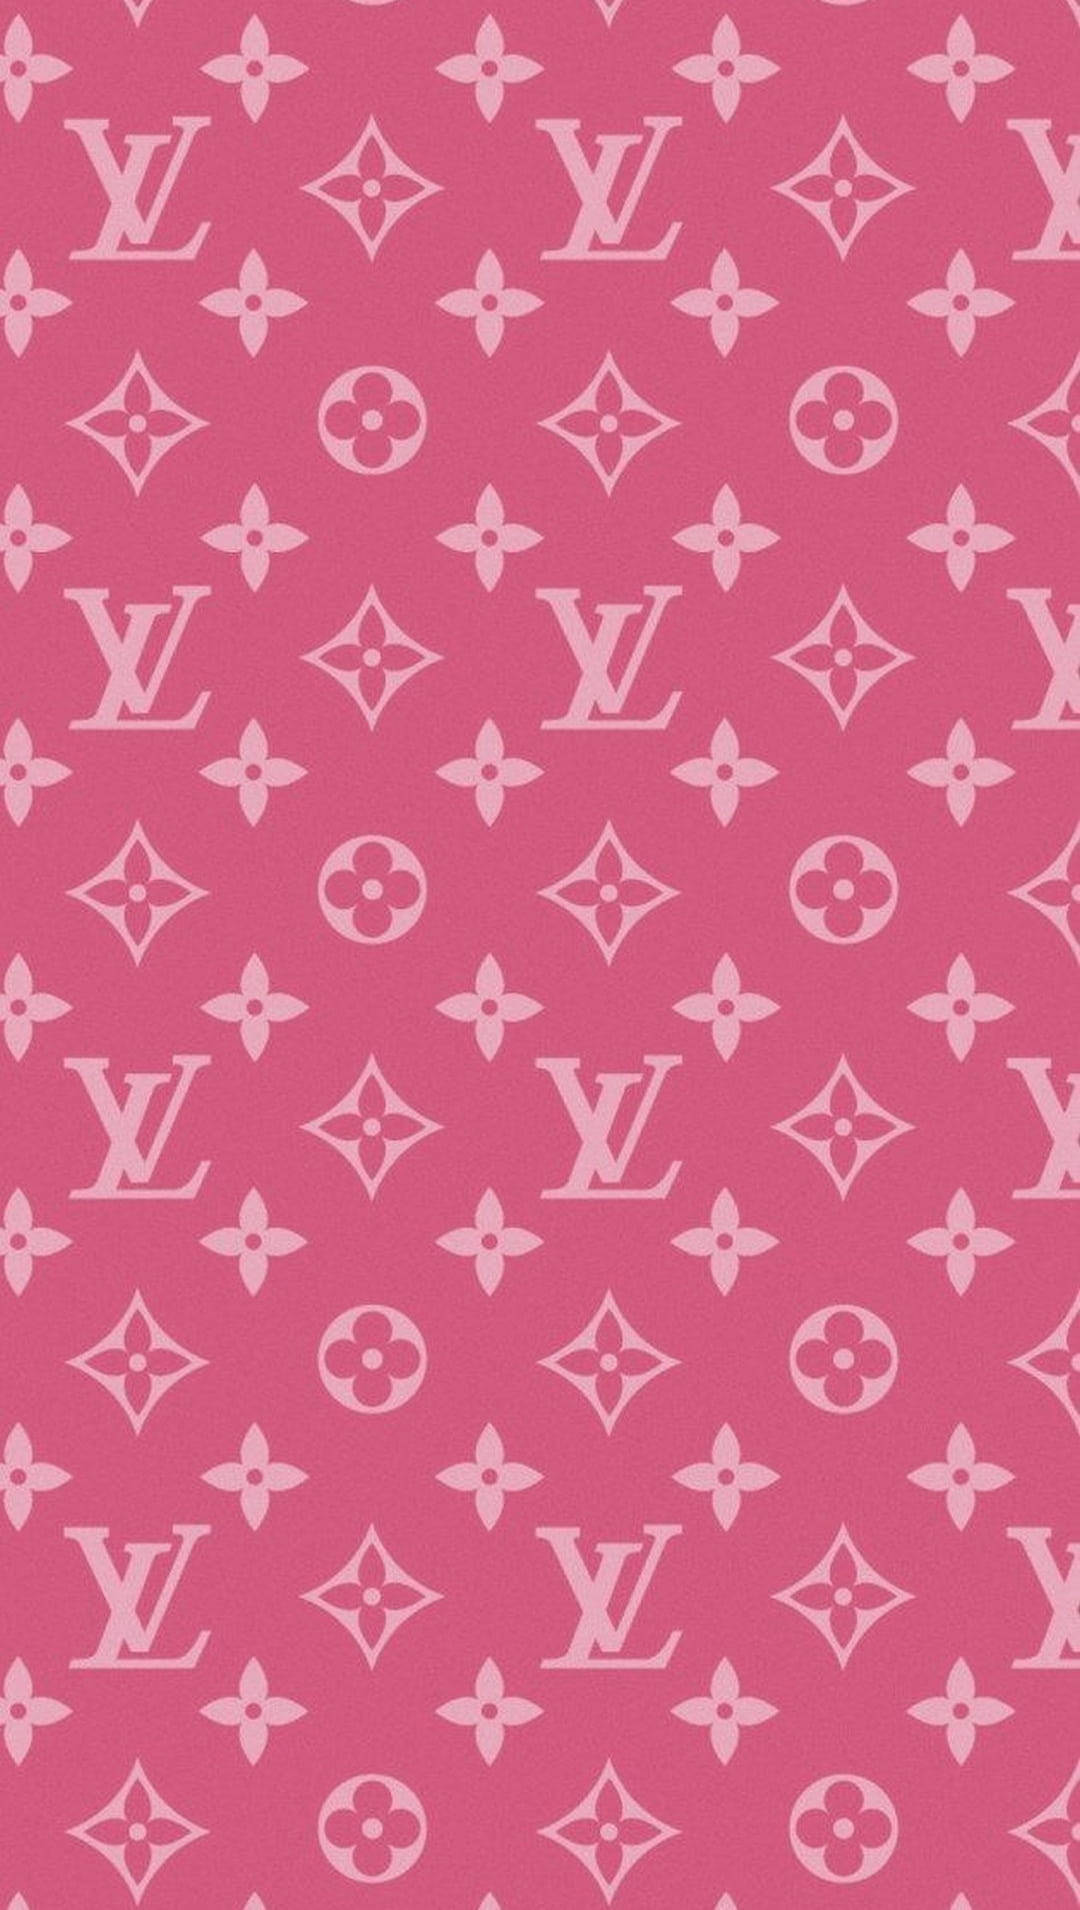 Dark Pink Louis Vuitton Phone Background